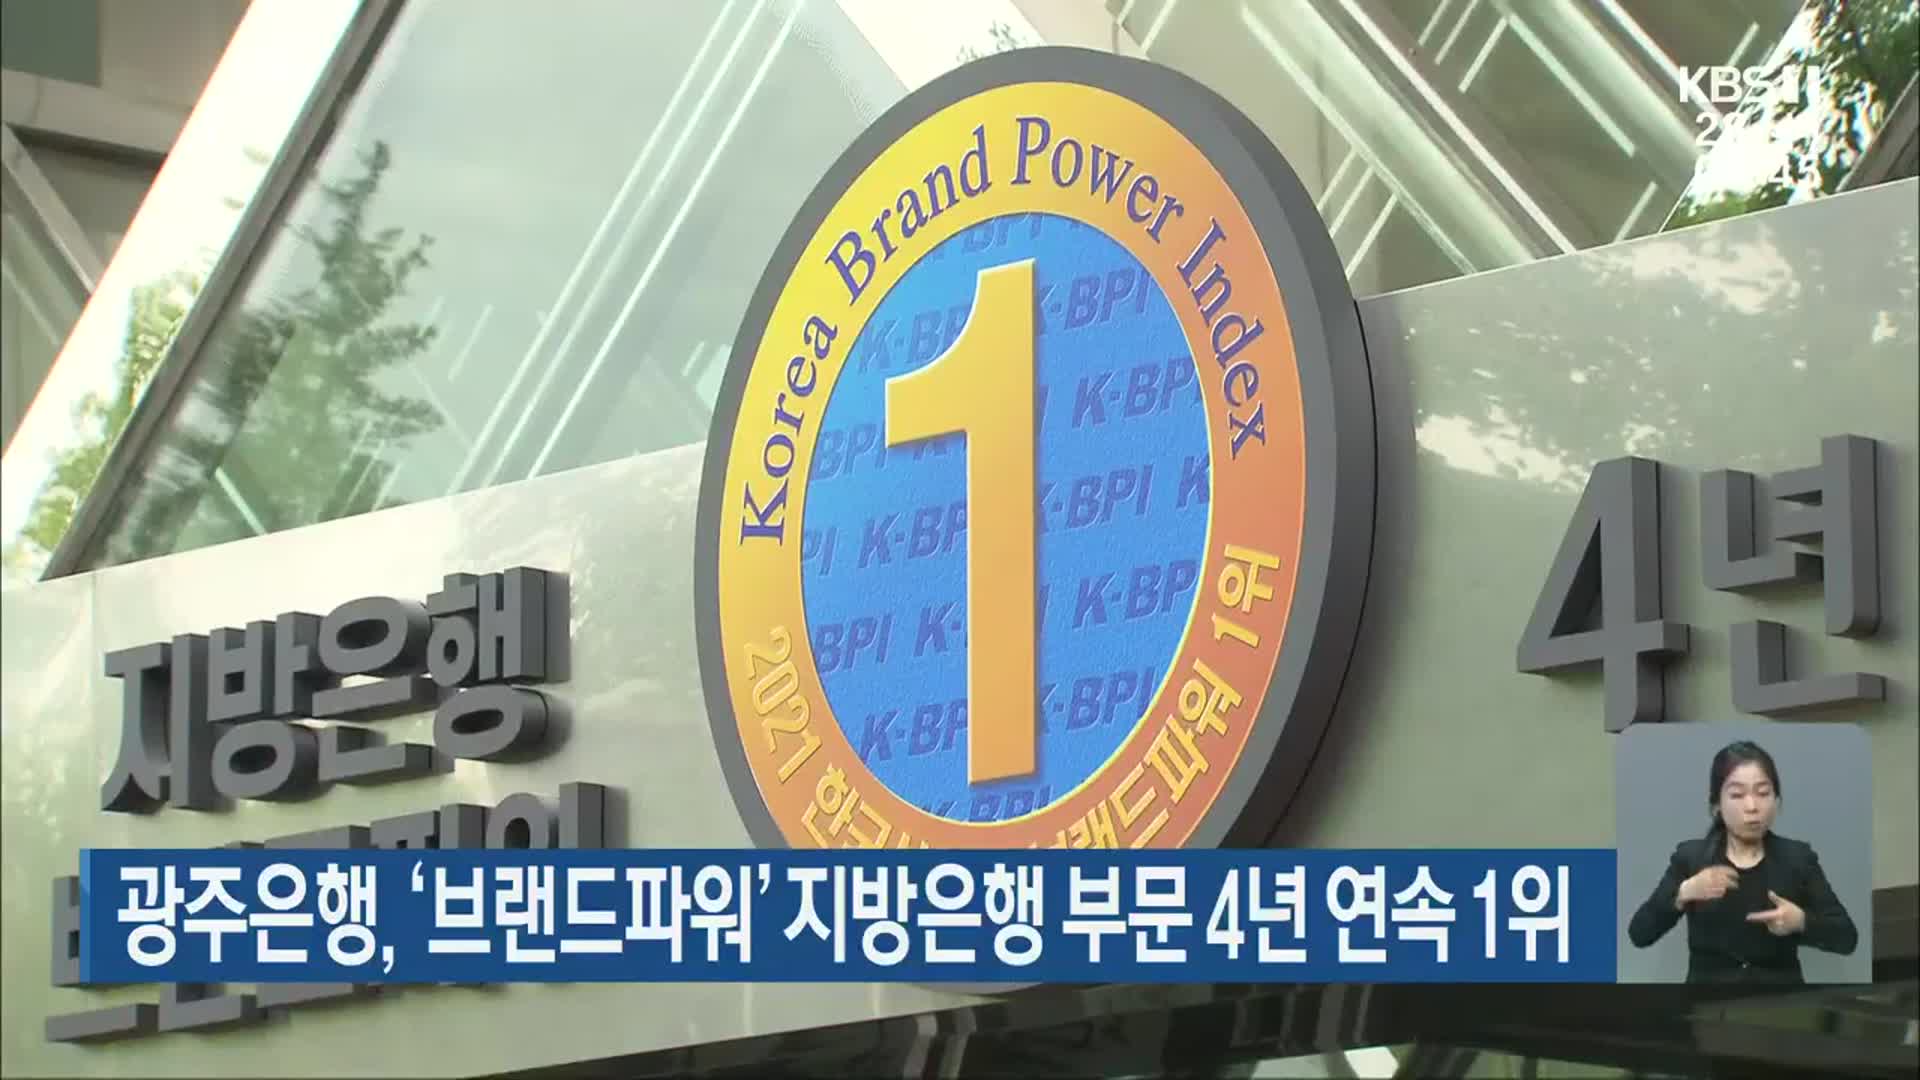 광주은행, ‘브랜드파워’ 지방은행 부문 4년 연속 1위